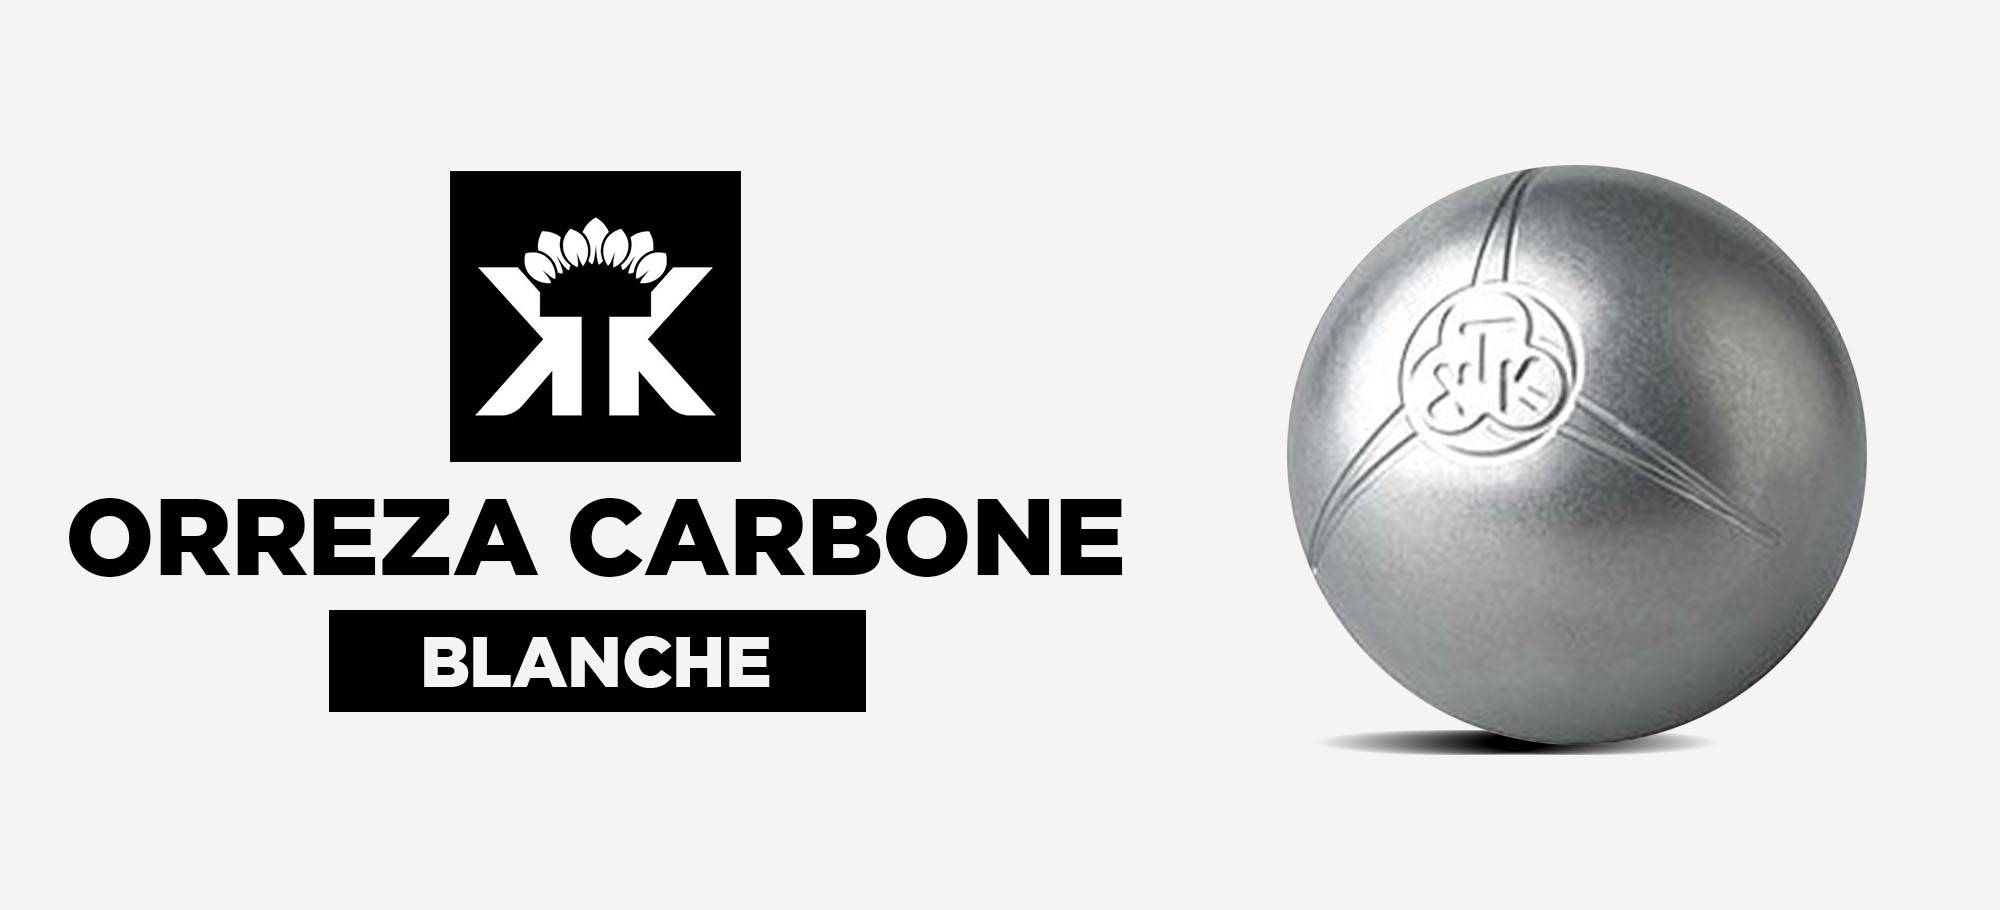 Lire la suite à propos de l’article Le point sur les boules de pétanque KTK Orreza carbone blanche